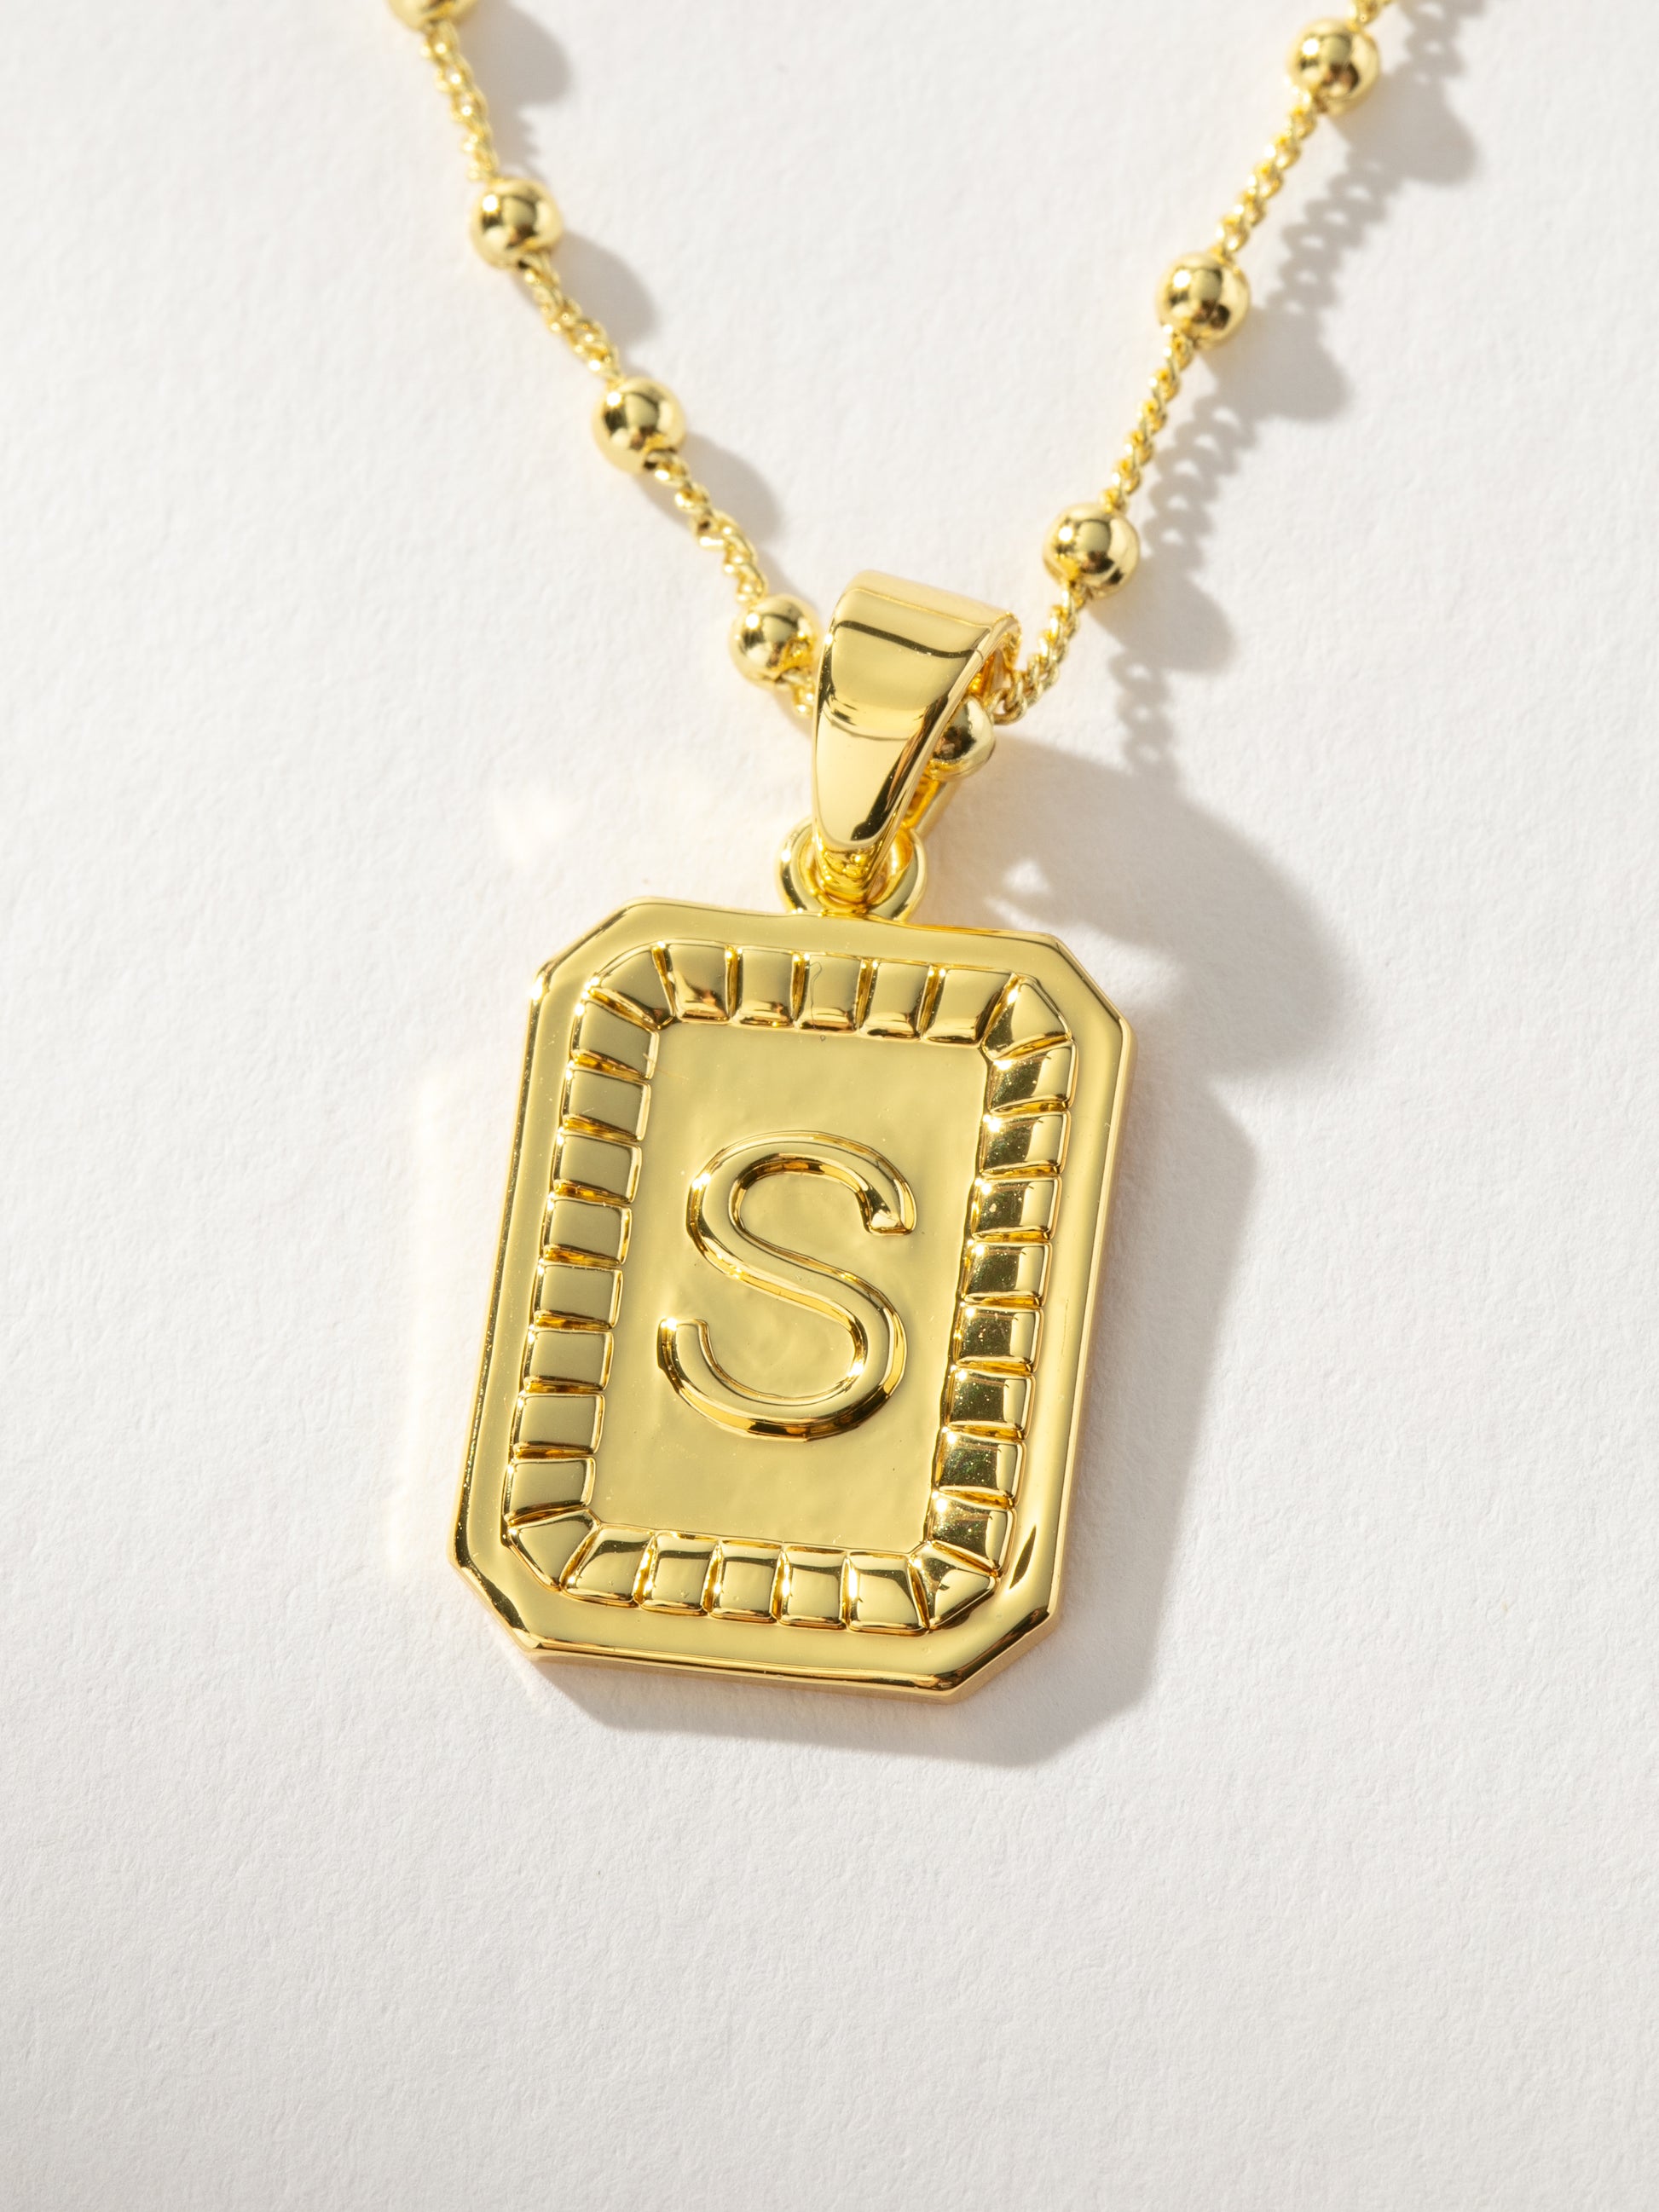 Sur Necklace | Gold S | Product Image | Uncommon James